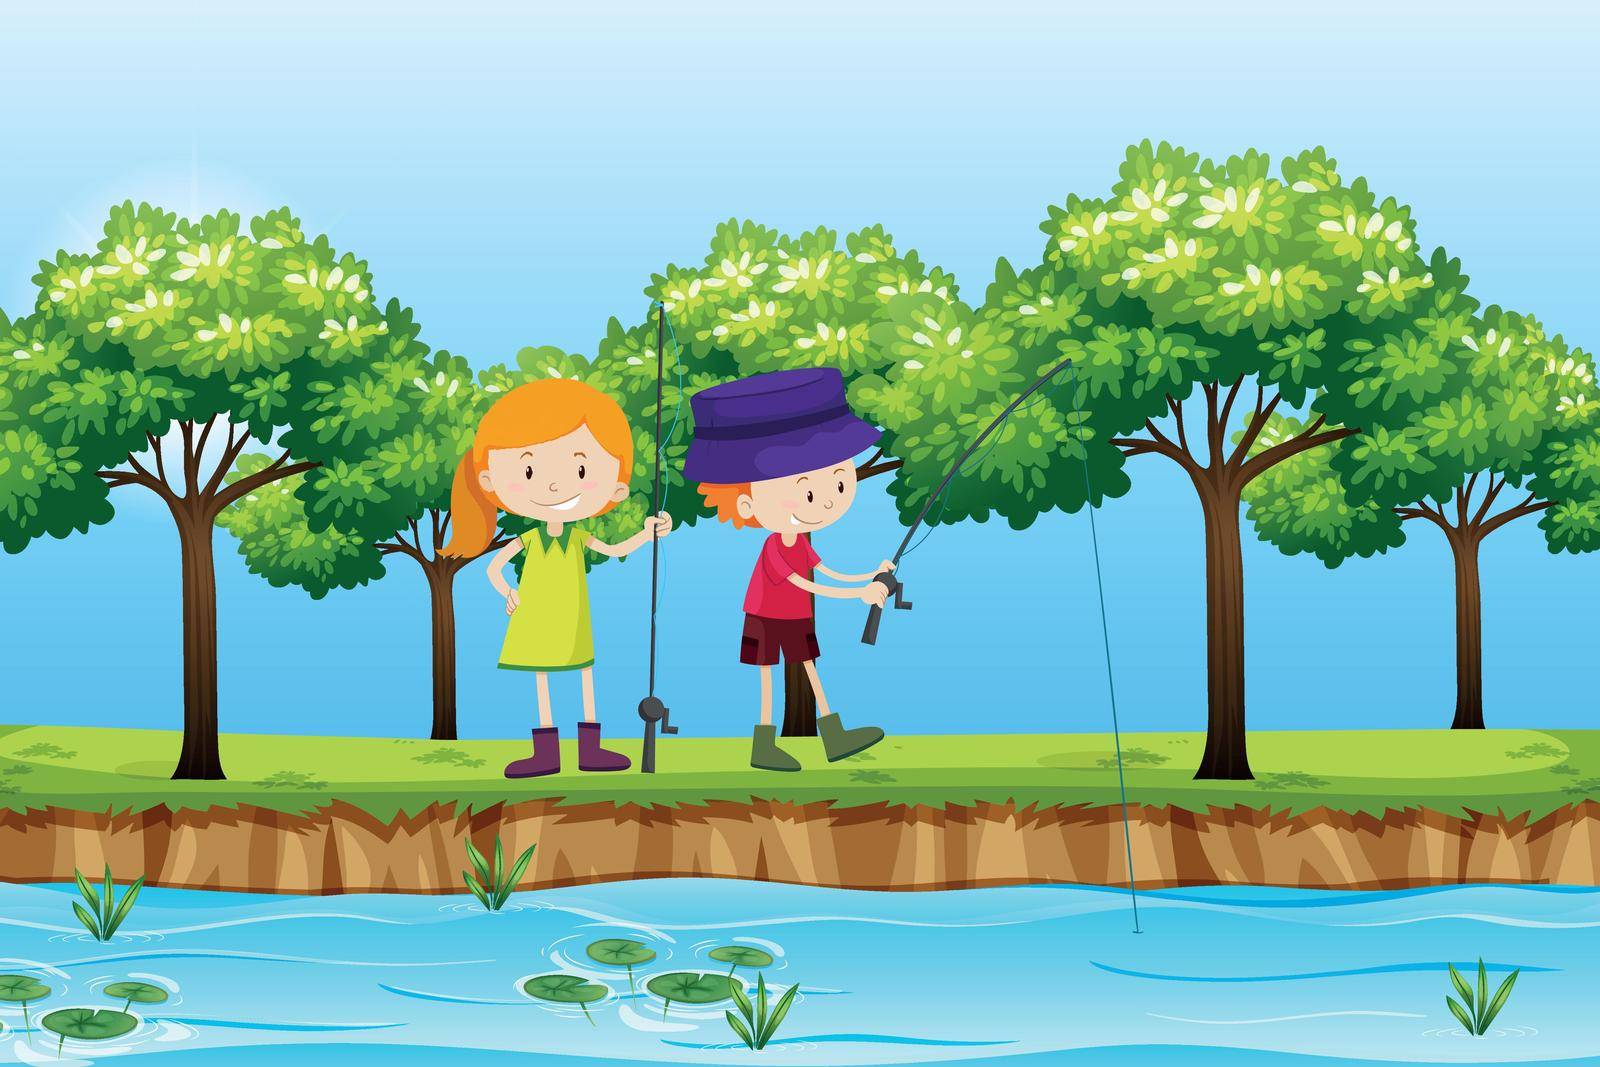 Two children fishing lake scene illustration